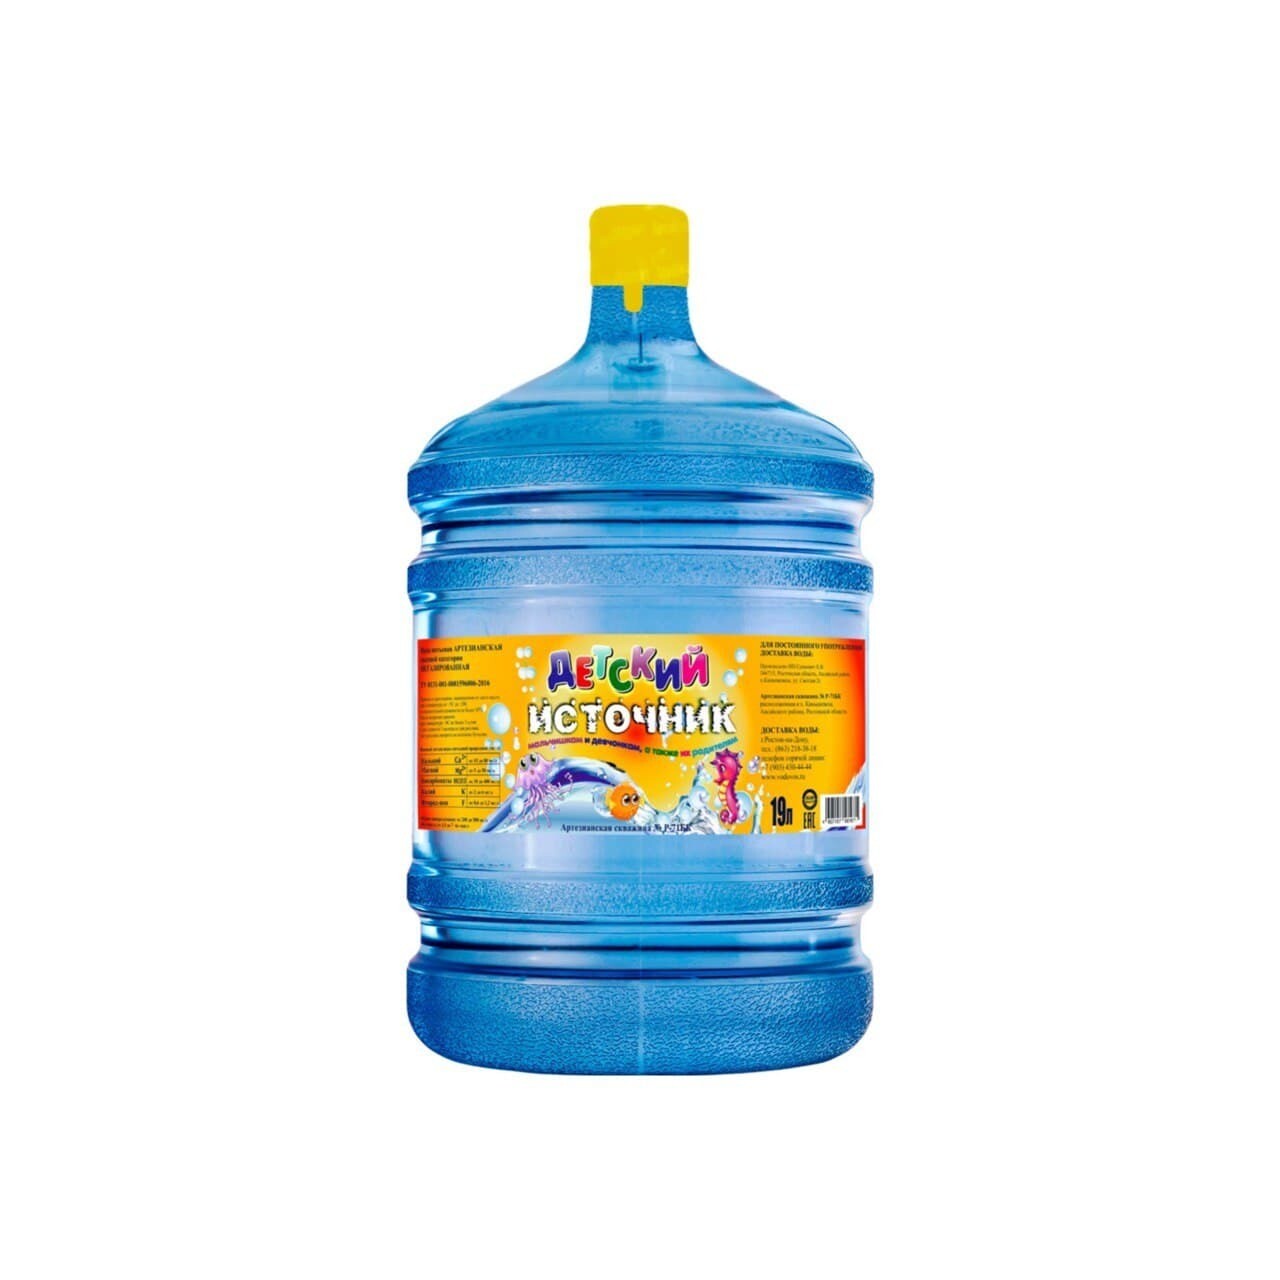 Вода 19 литров нижний новгород. Вода 19 литров. Детская вода 19 литров. Вода детская 19 литров с доставкой. Название воды в бутылках 19 литров.